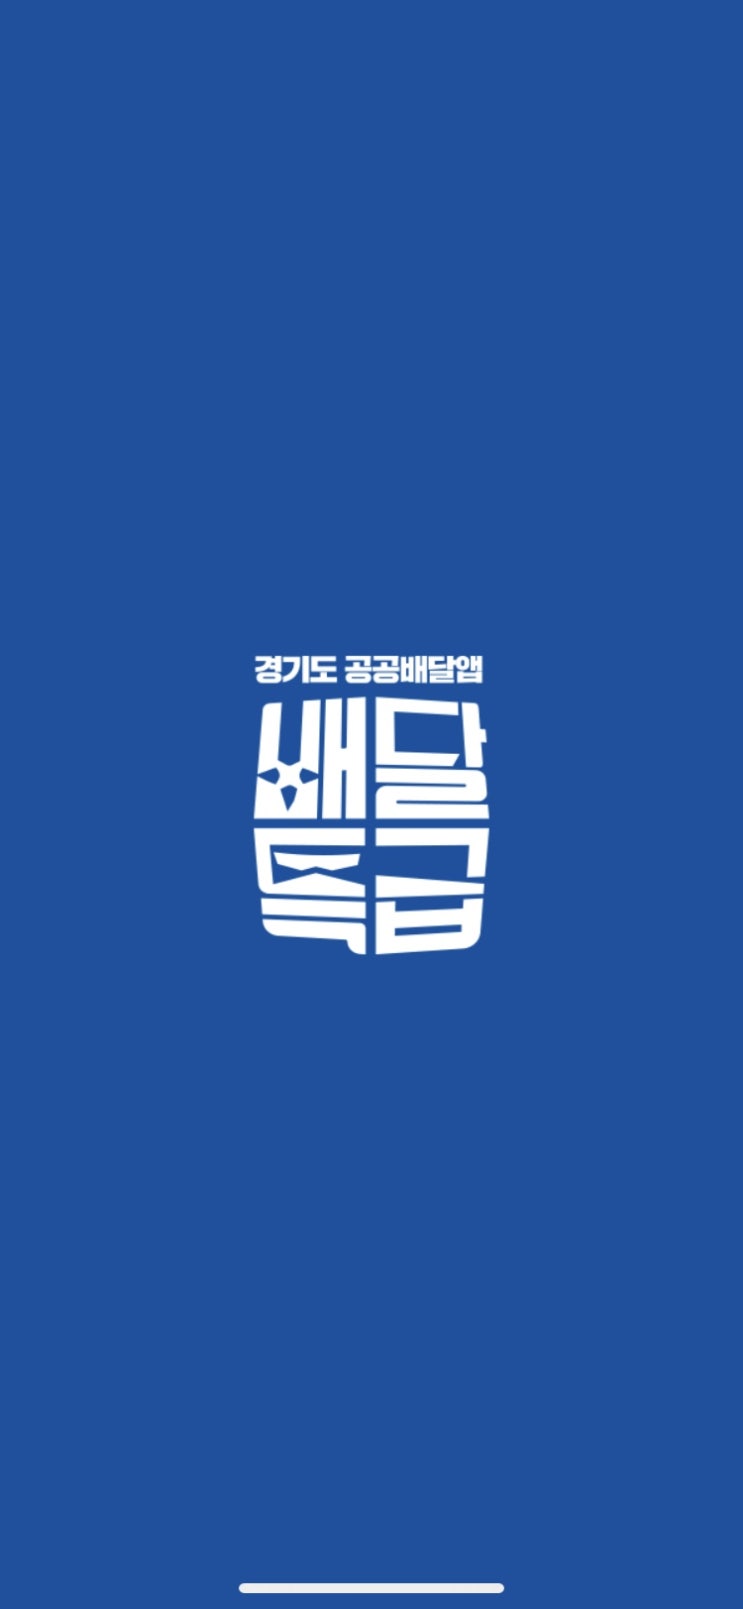 경기도 공공배달앱 배달특급으로 착한소비!